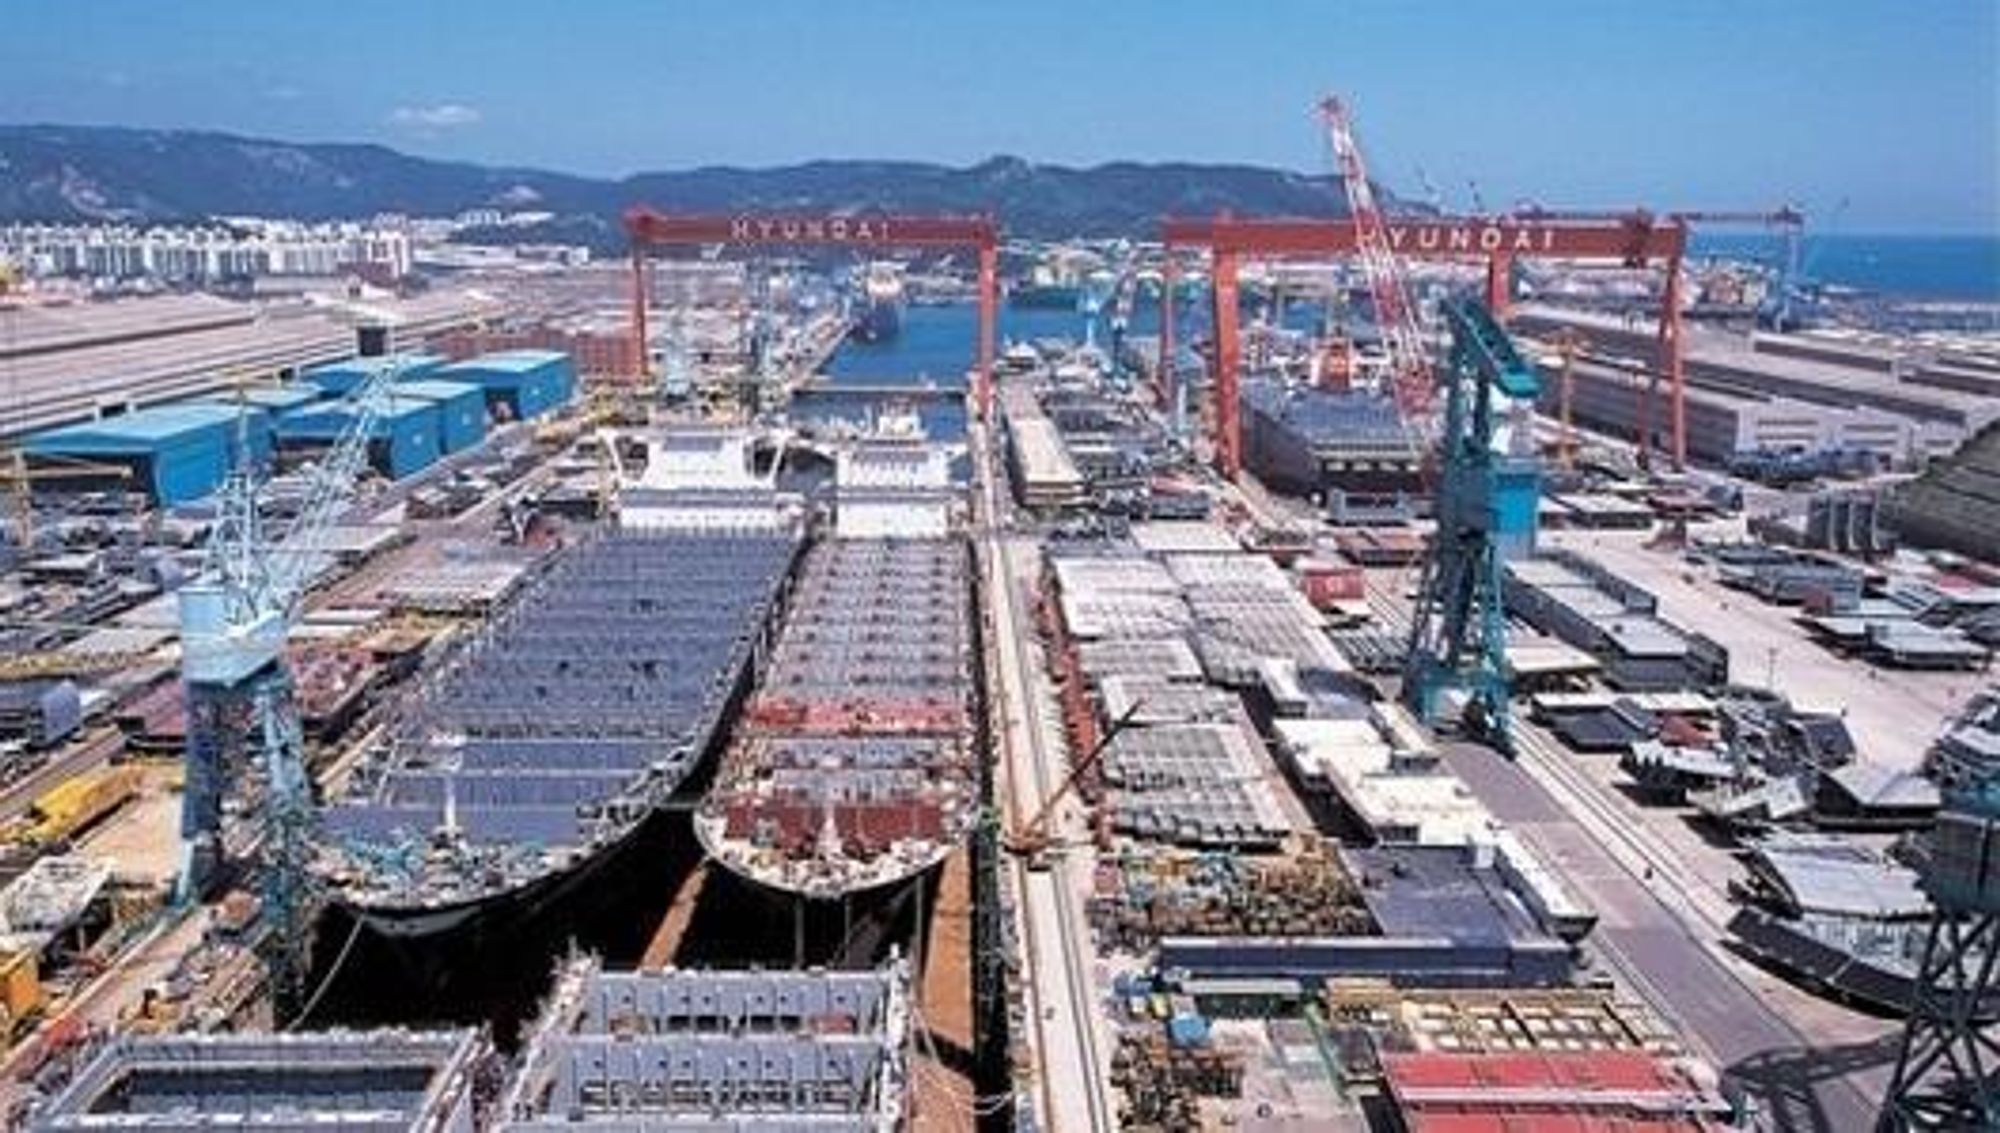 STOR FORSKJELL: Hyundai Heavy Industries er ev verdens sktørste skipsbyggere og har verdens største anlegg for å bygge flytende produksjonplattformer. Hittil har de bygget mer enn 15 FPSO-er.